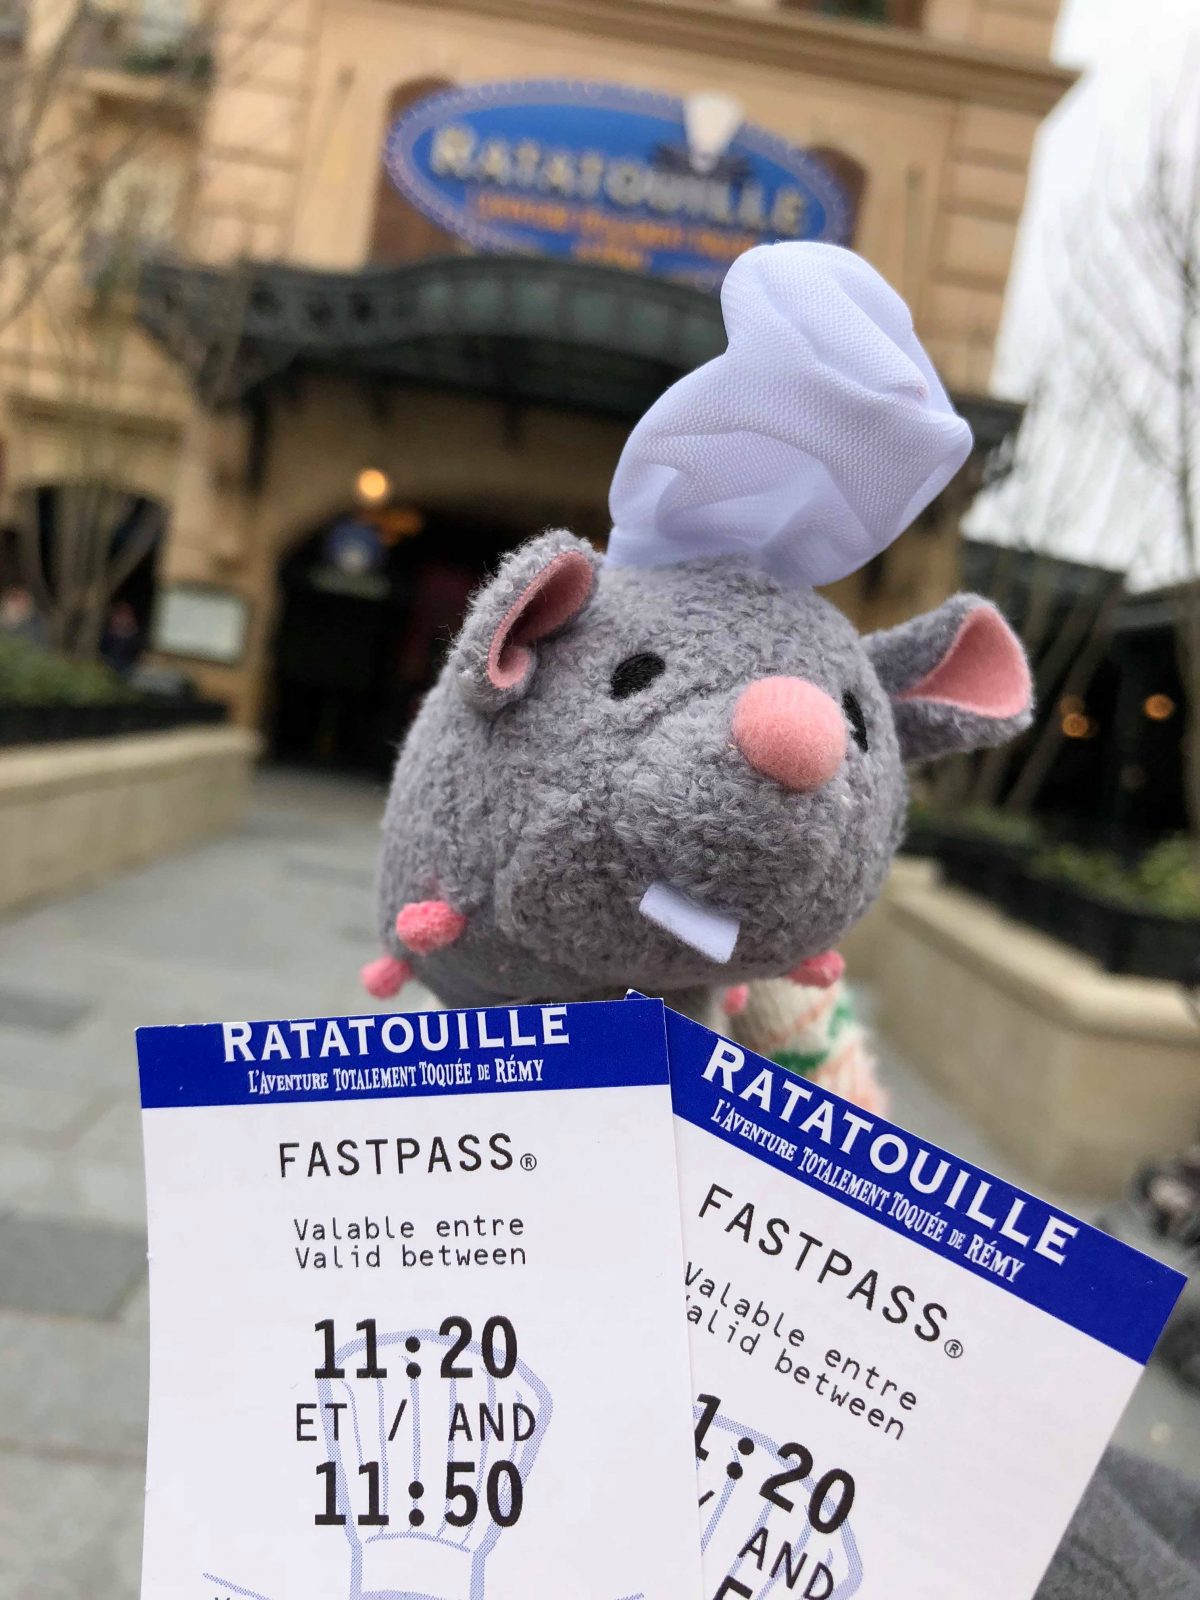 Disneyland Paris fastpass for Ratatouille the ride